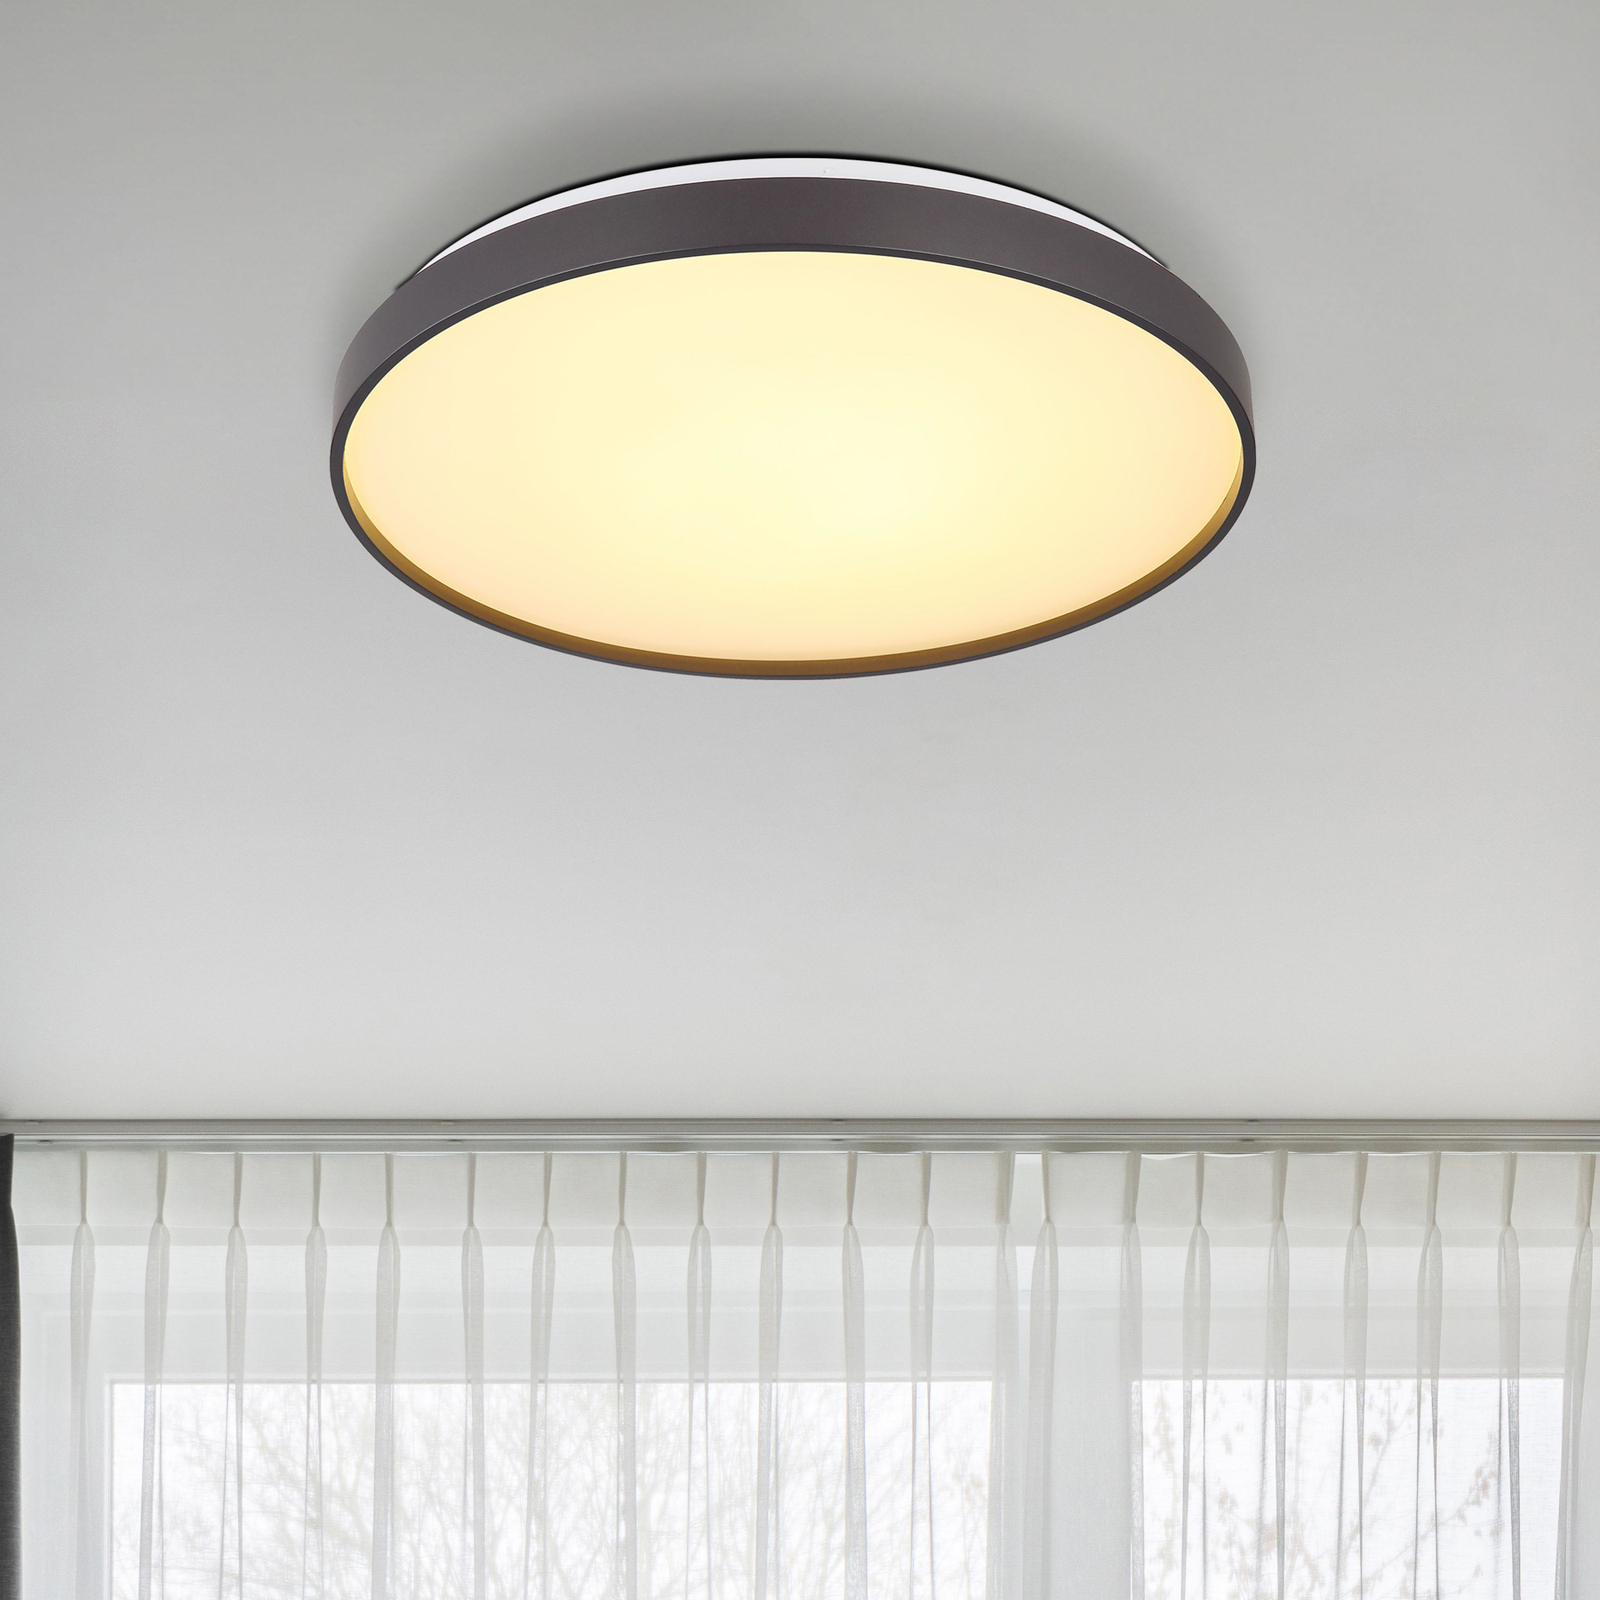 Eclypse LED stropno svjetlo, antracit, Ø 48 cm, akril/metal